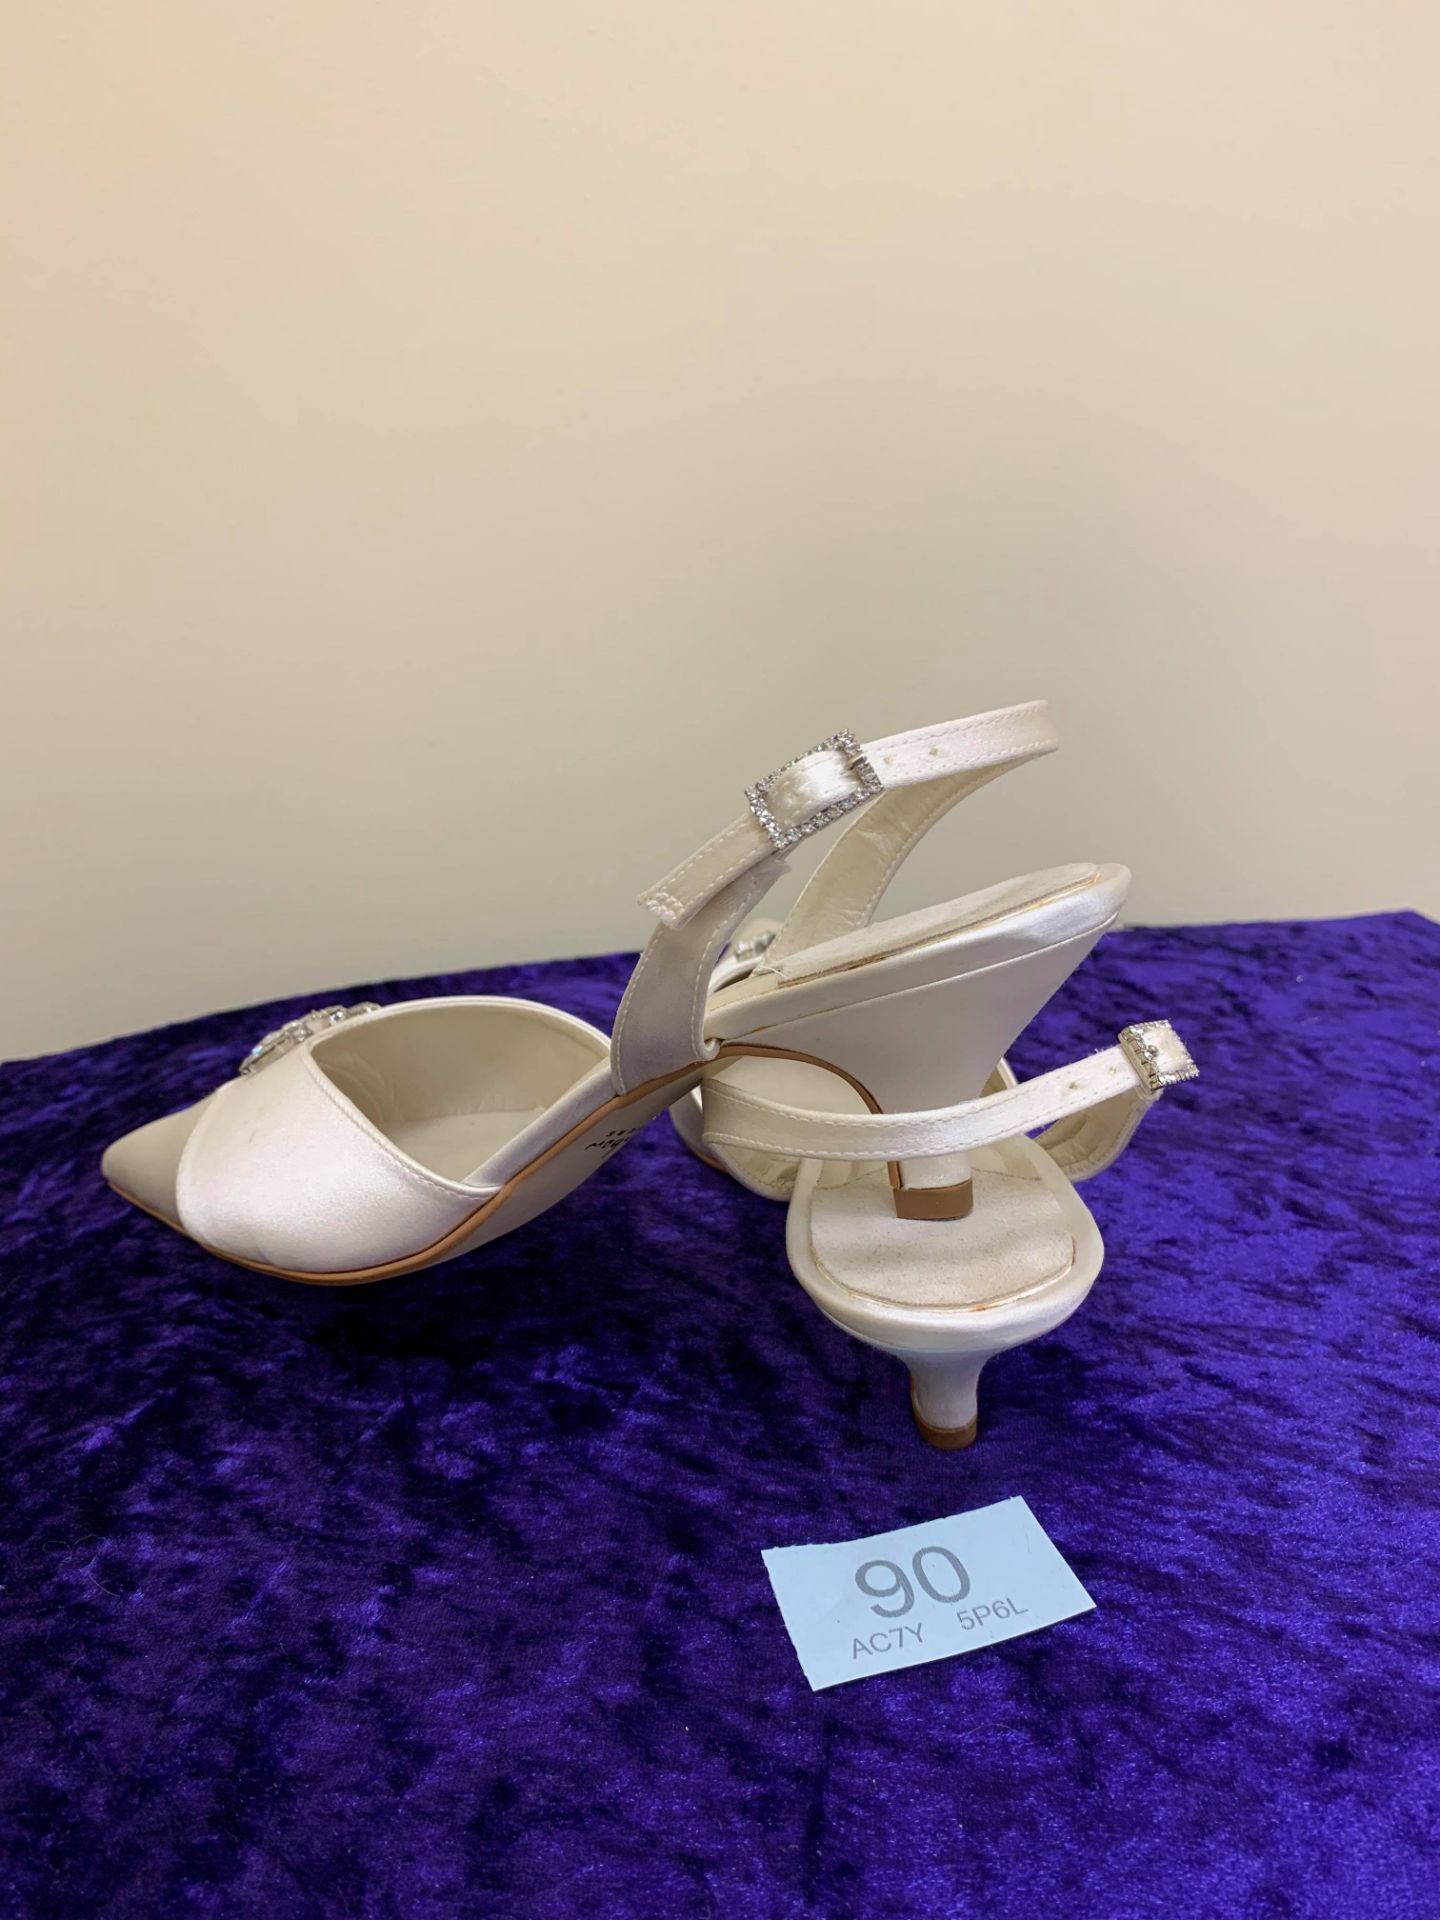 Designer Shoes Ivory Size 5. Code 90 - Image 2 of 7